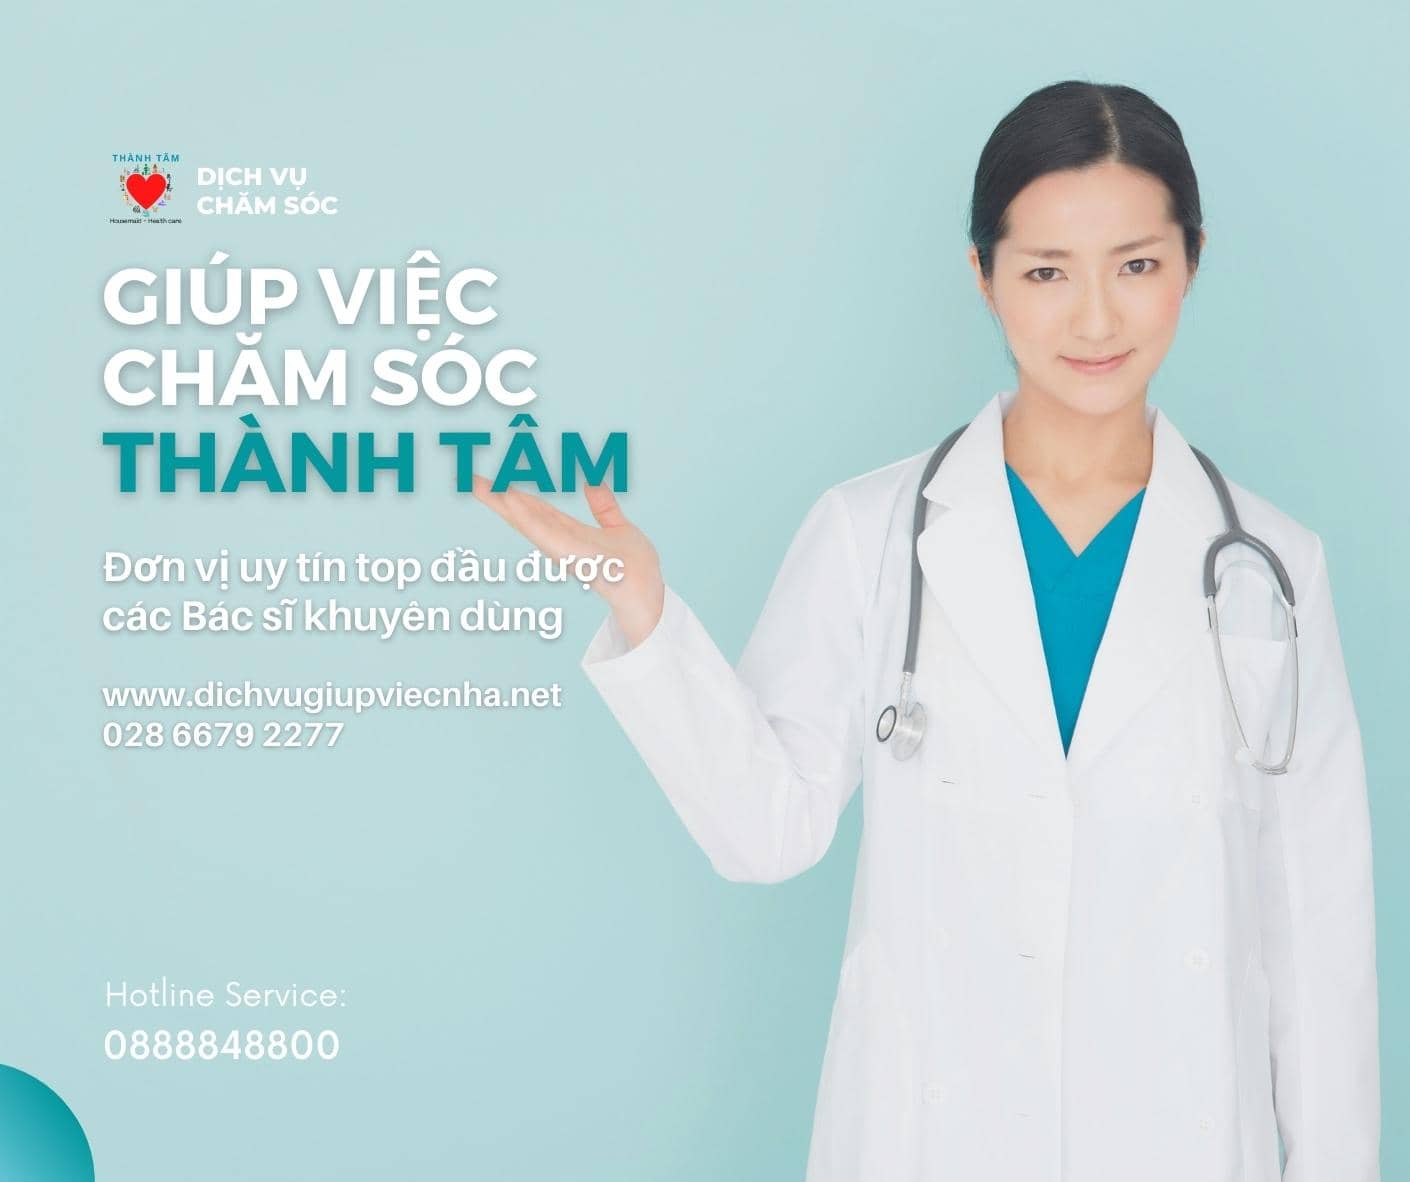 Thành Tâm cung ứng người nuôi sinh cho bệnh viện phụ sản Quốc tế Sài Gòn